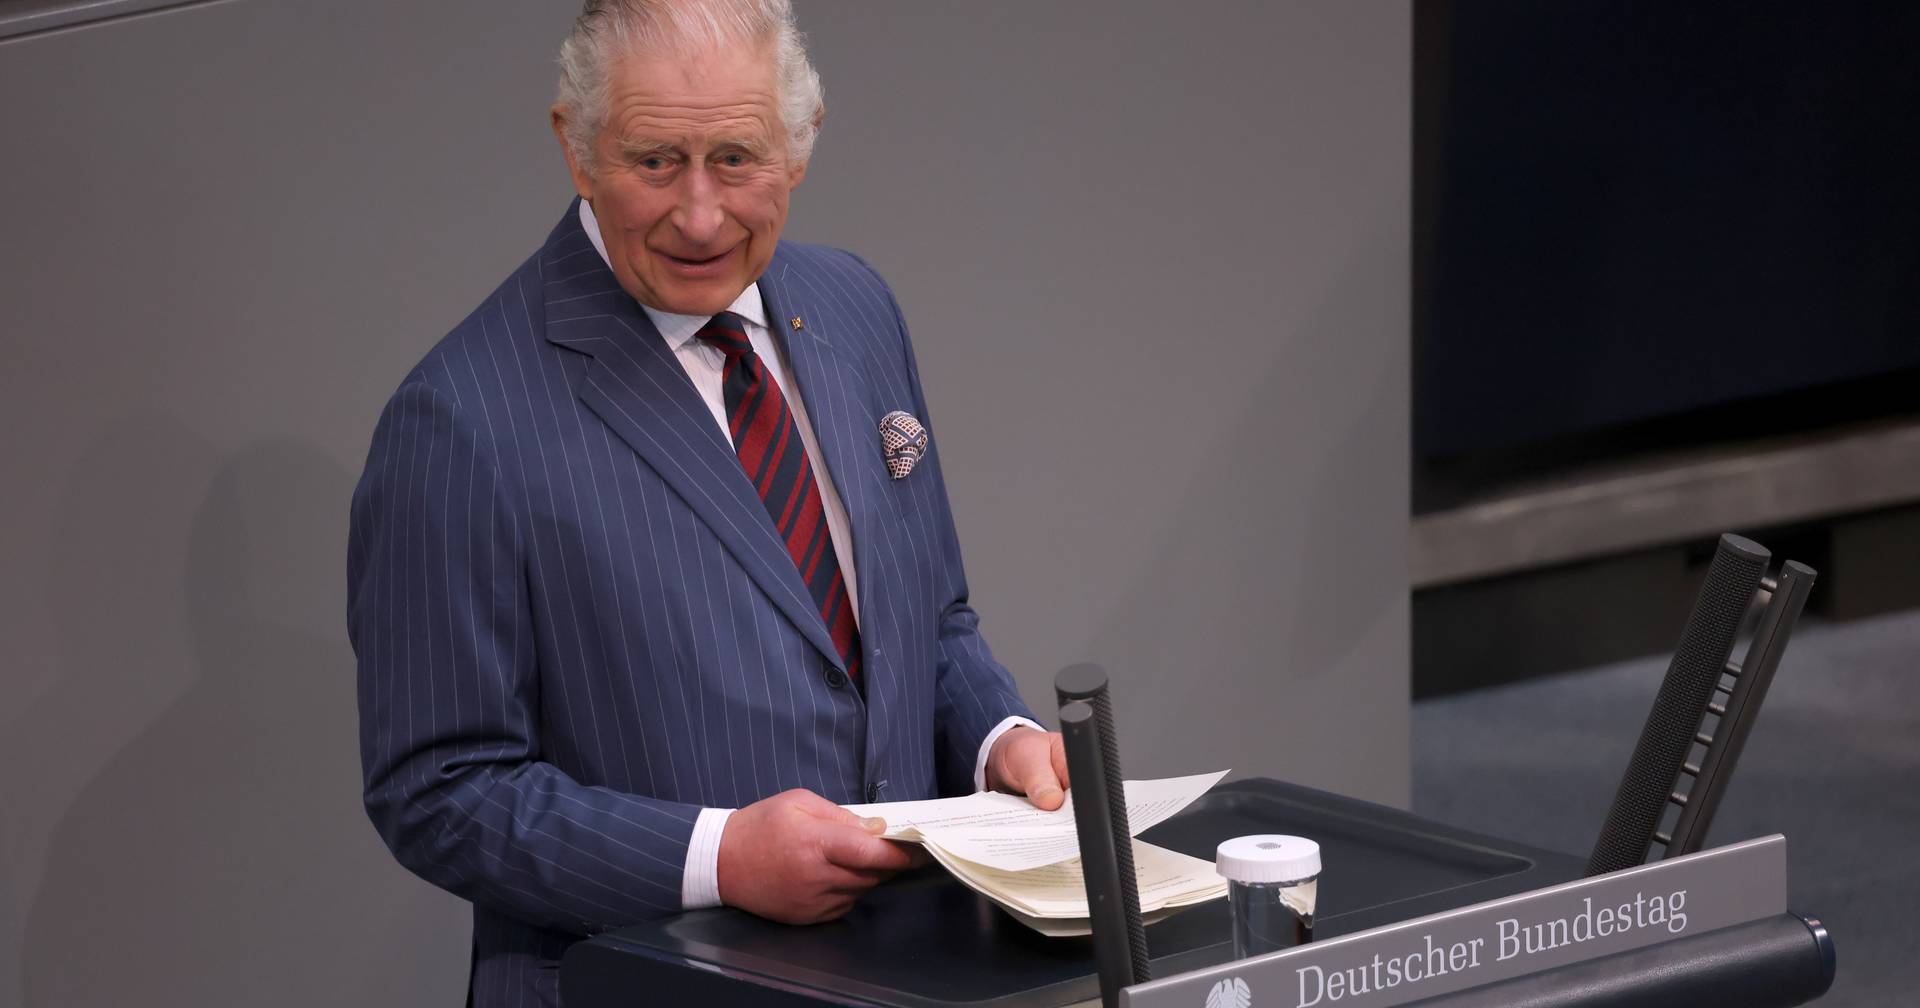 Charles III est le premier monarque britannique à s’exprimer au Bundestag.  Plaisanter et utiliser l’Ukraine comme exemple de la nouvelle ère d’unité en Europe